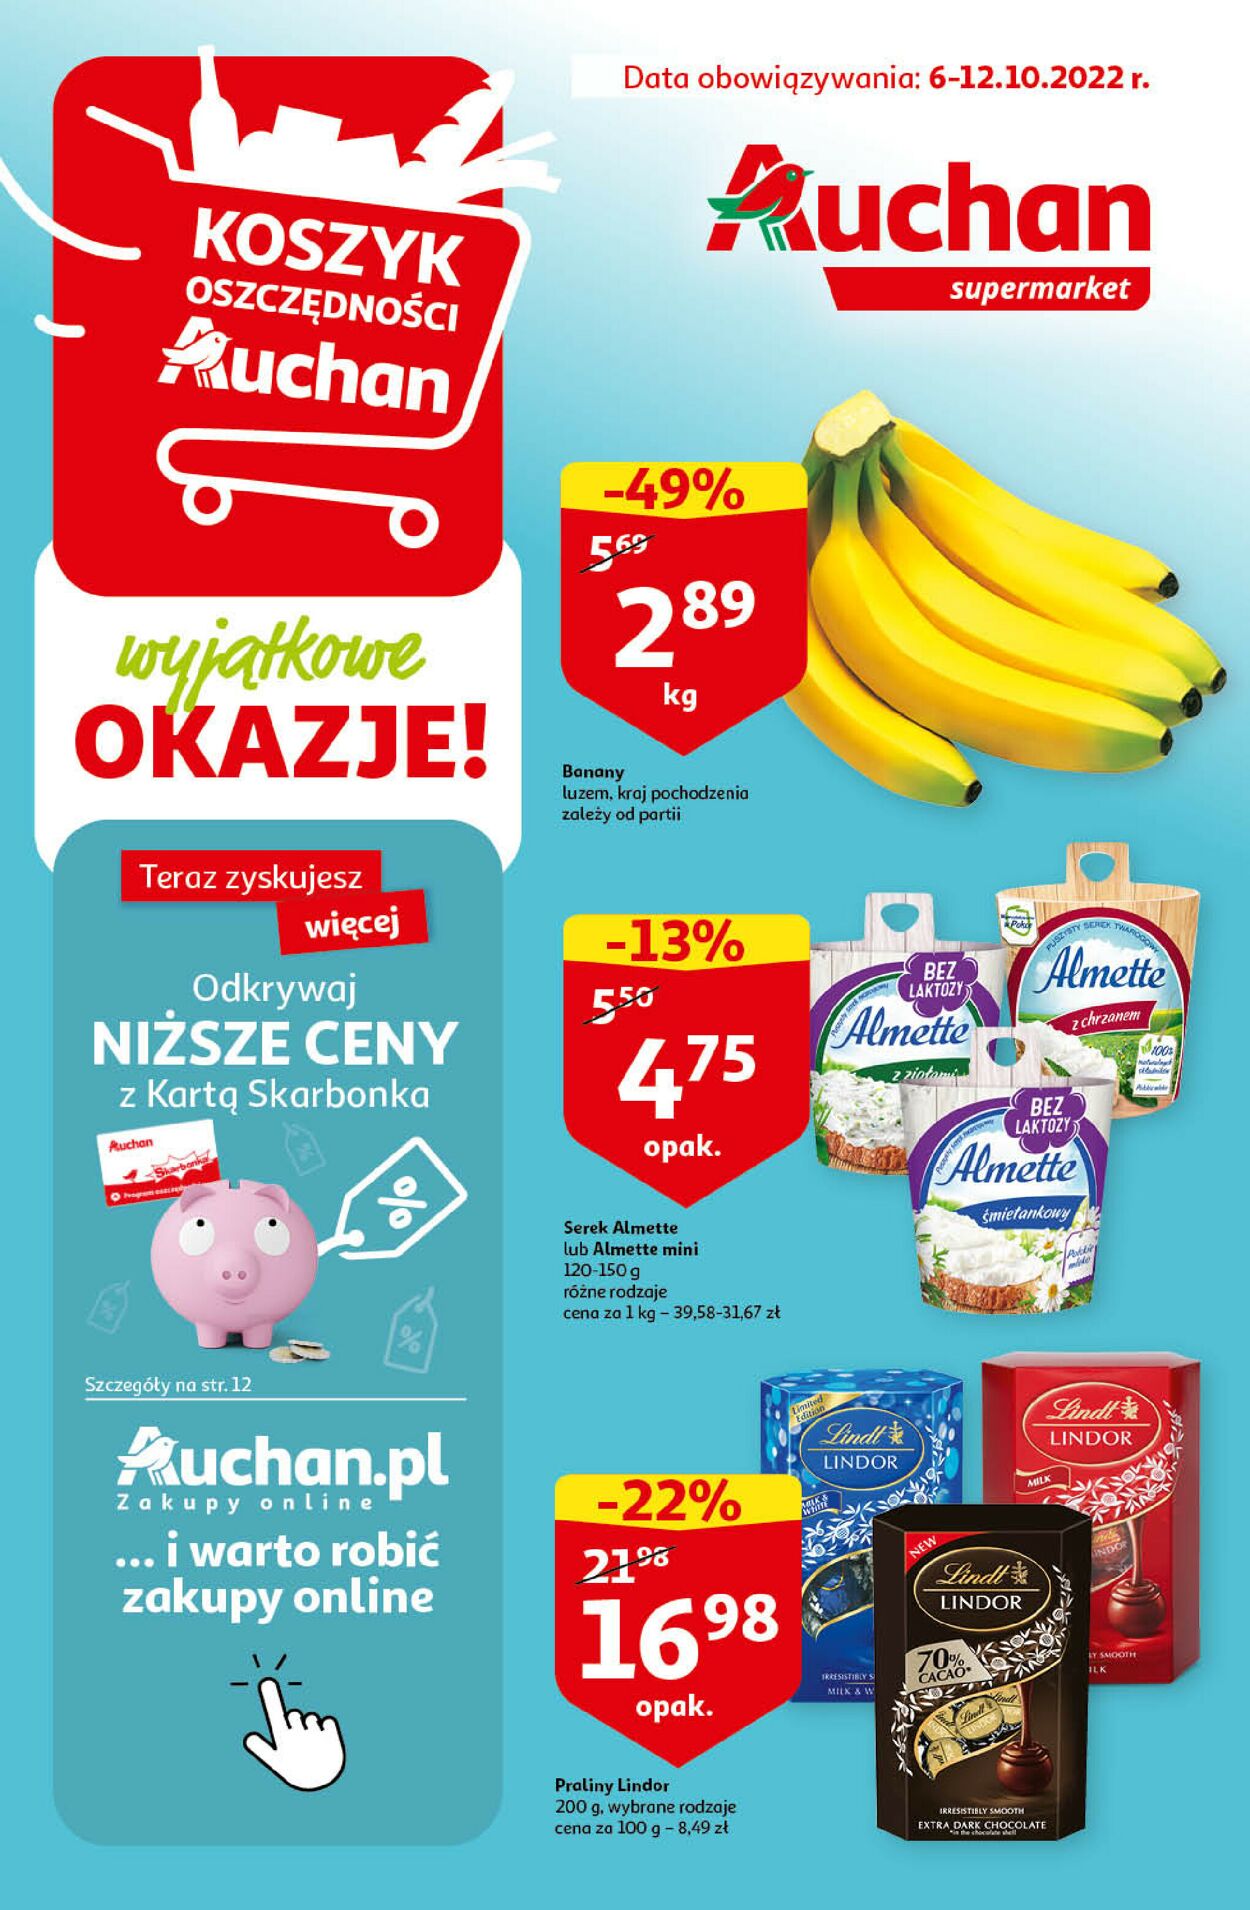 Gazetka Auchan od 06.10.2022 do 12.10.2022 - Supermarket